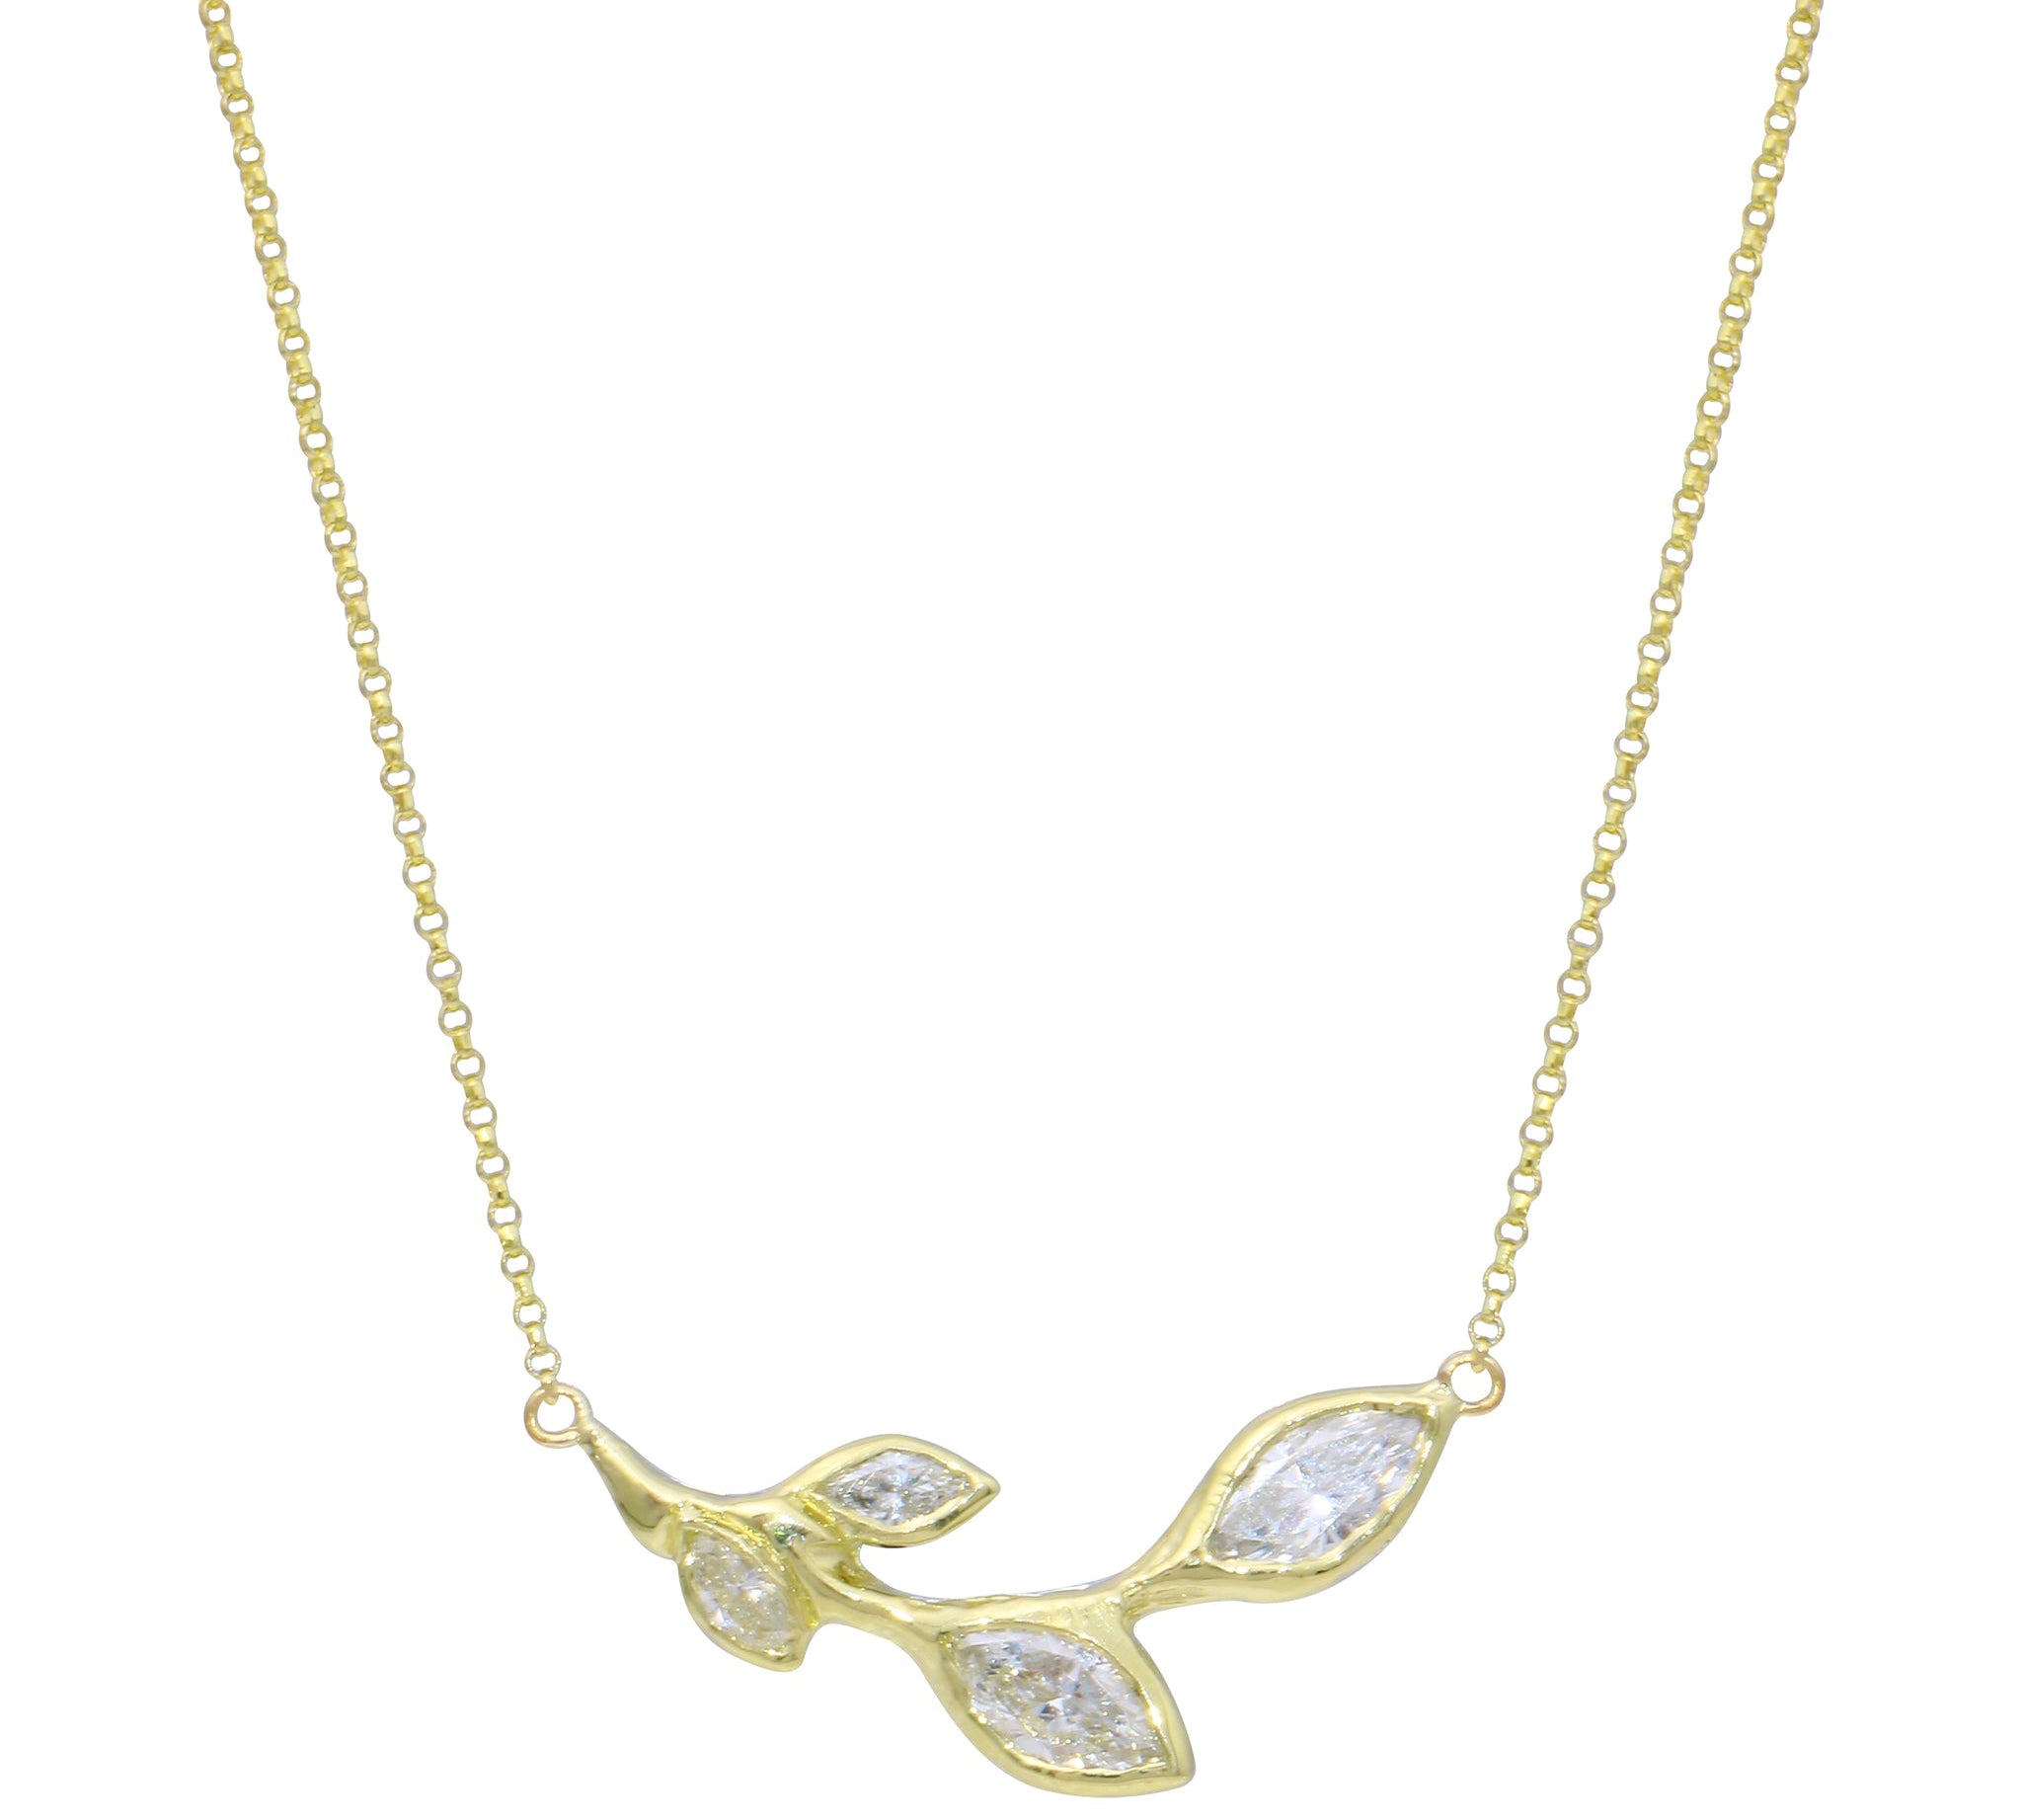 Four Petal Necklace Pendant Jaine K Designs Yellow Gold  